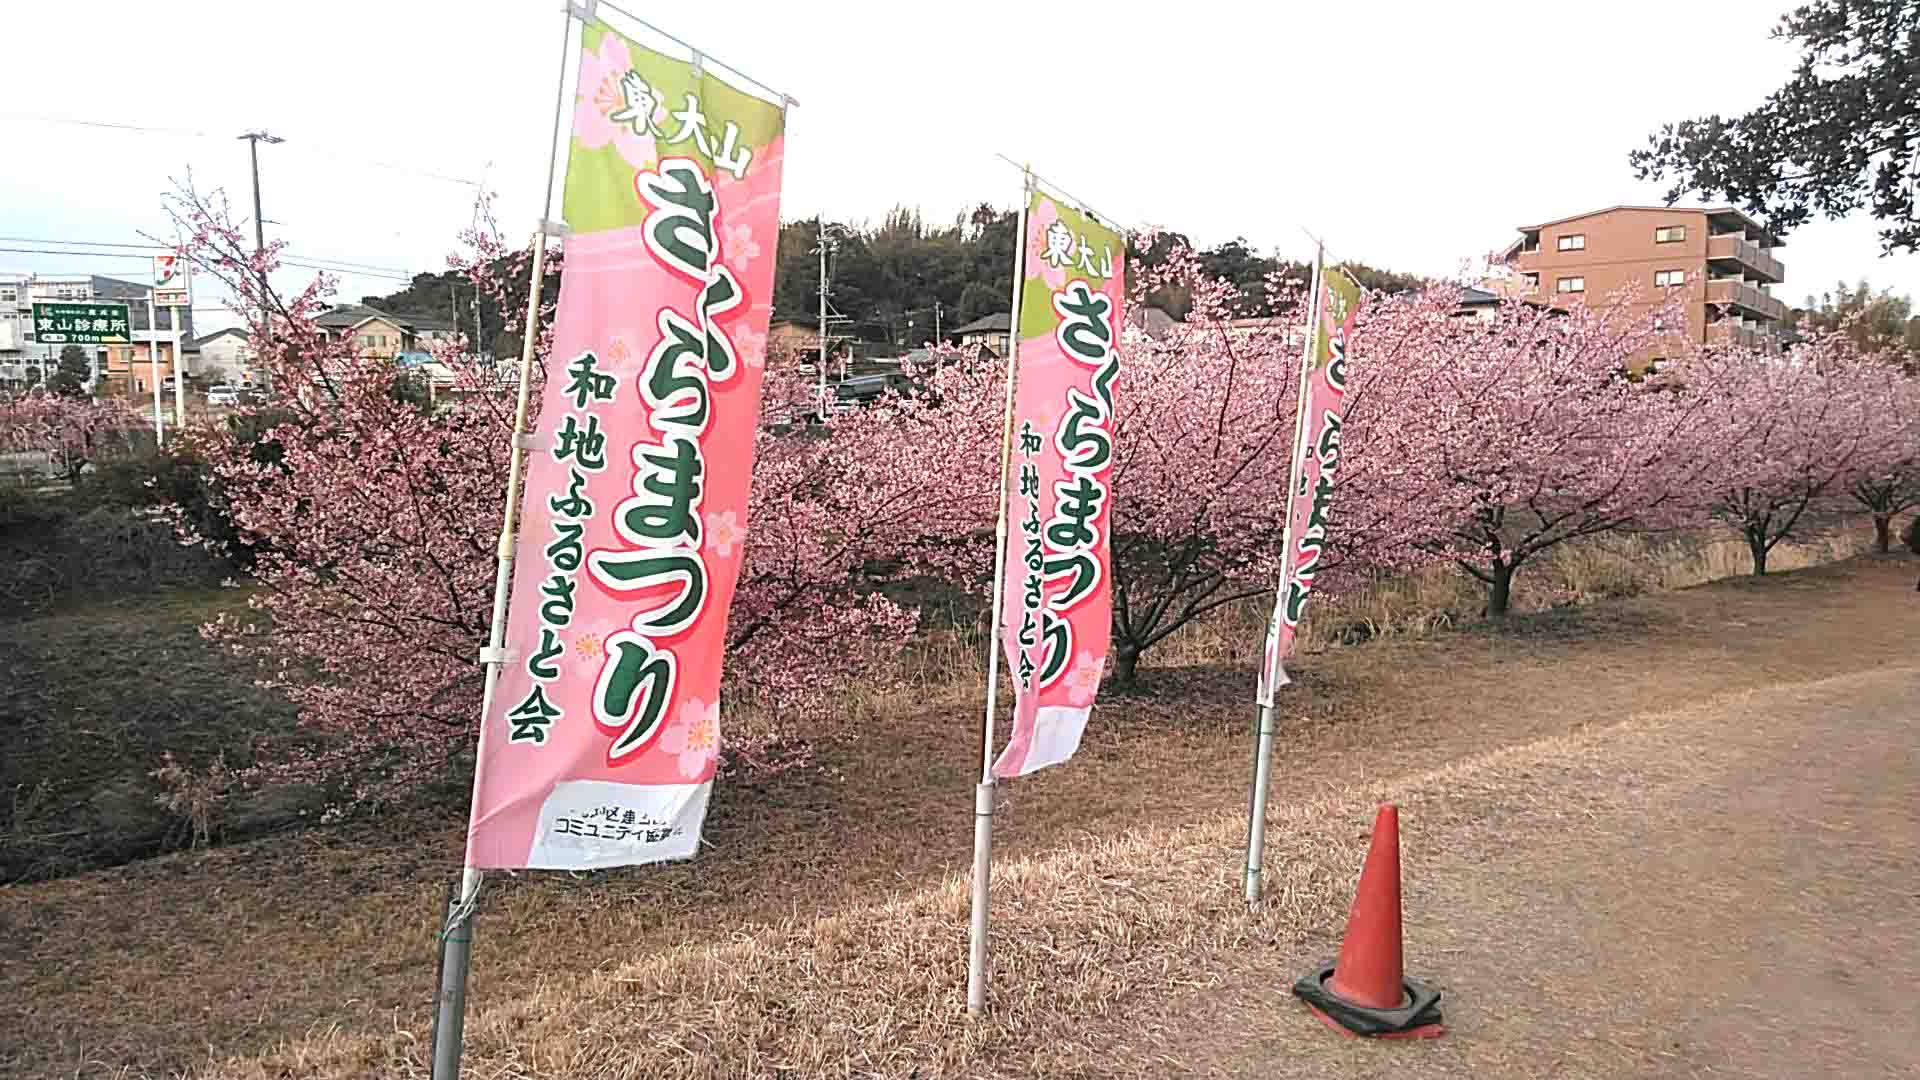 東大山の河津桜22年 浜松のお花見スポット桜祭り開催します Hamap 浜松情報map